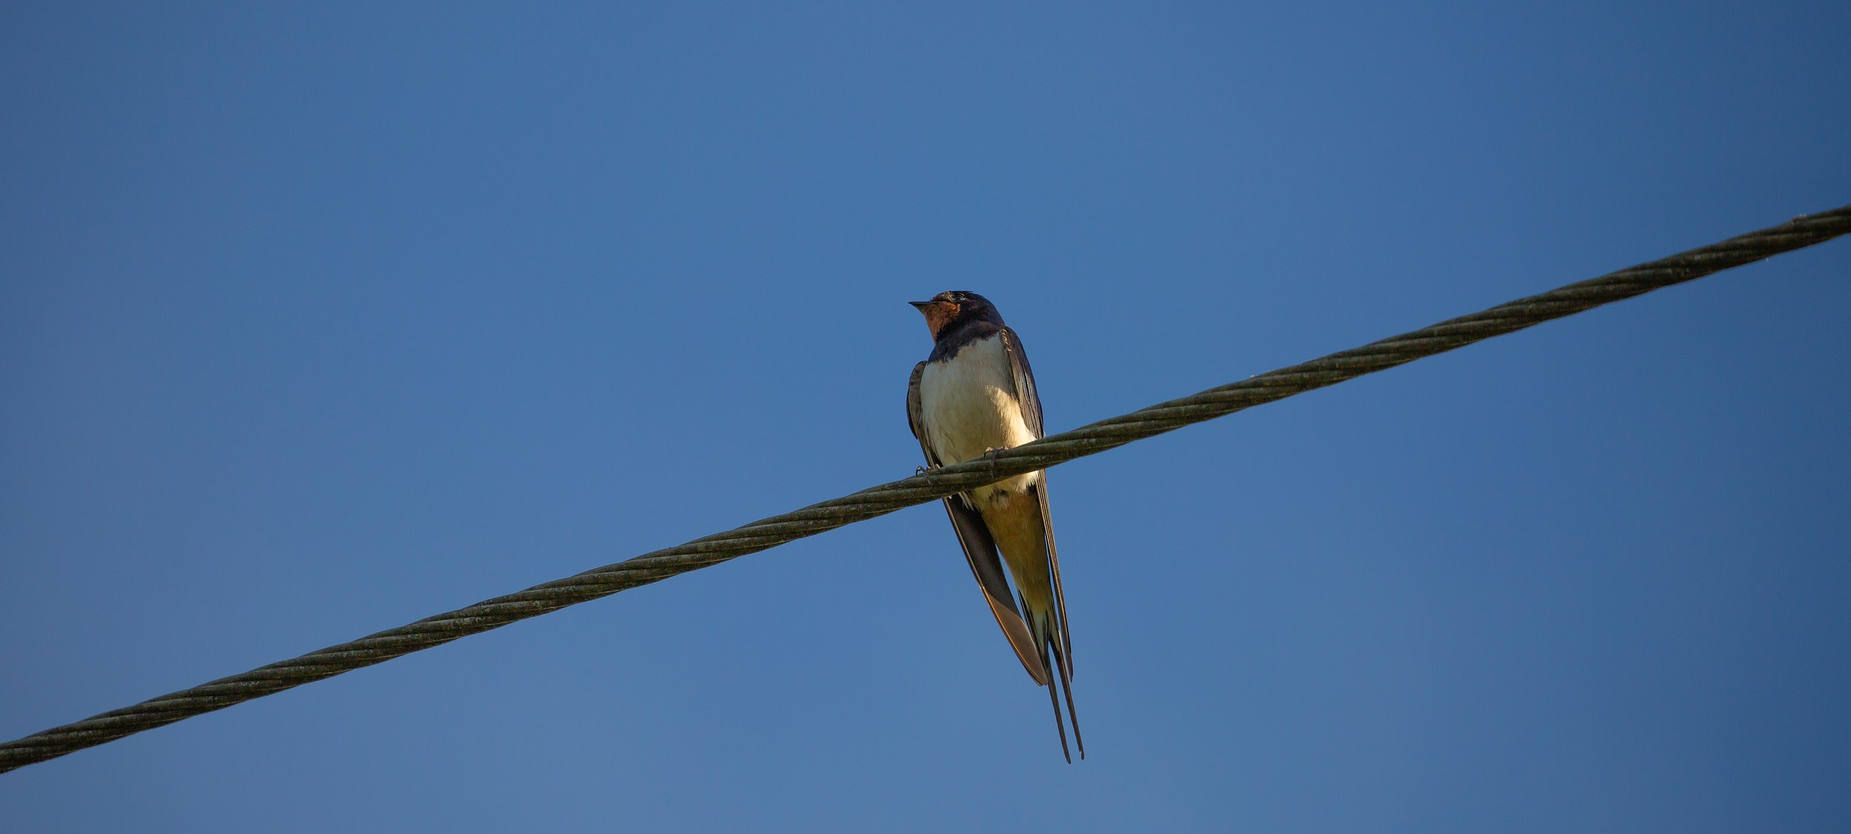 Vogel - Bird on the wire